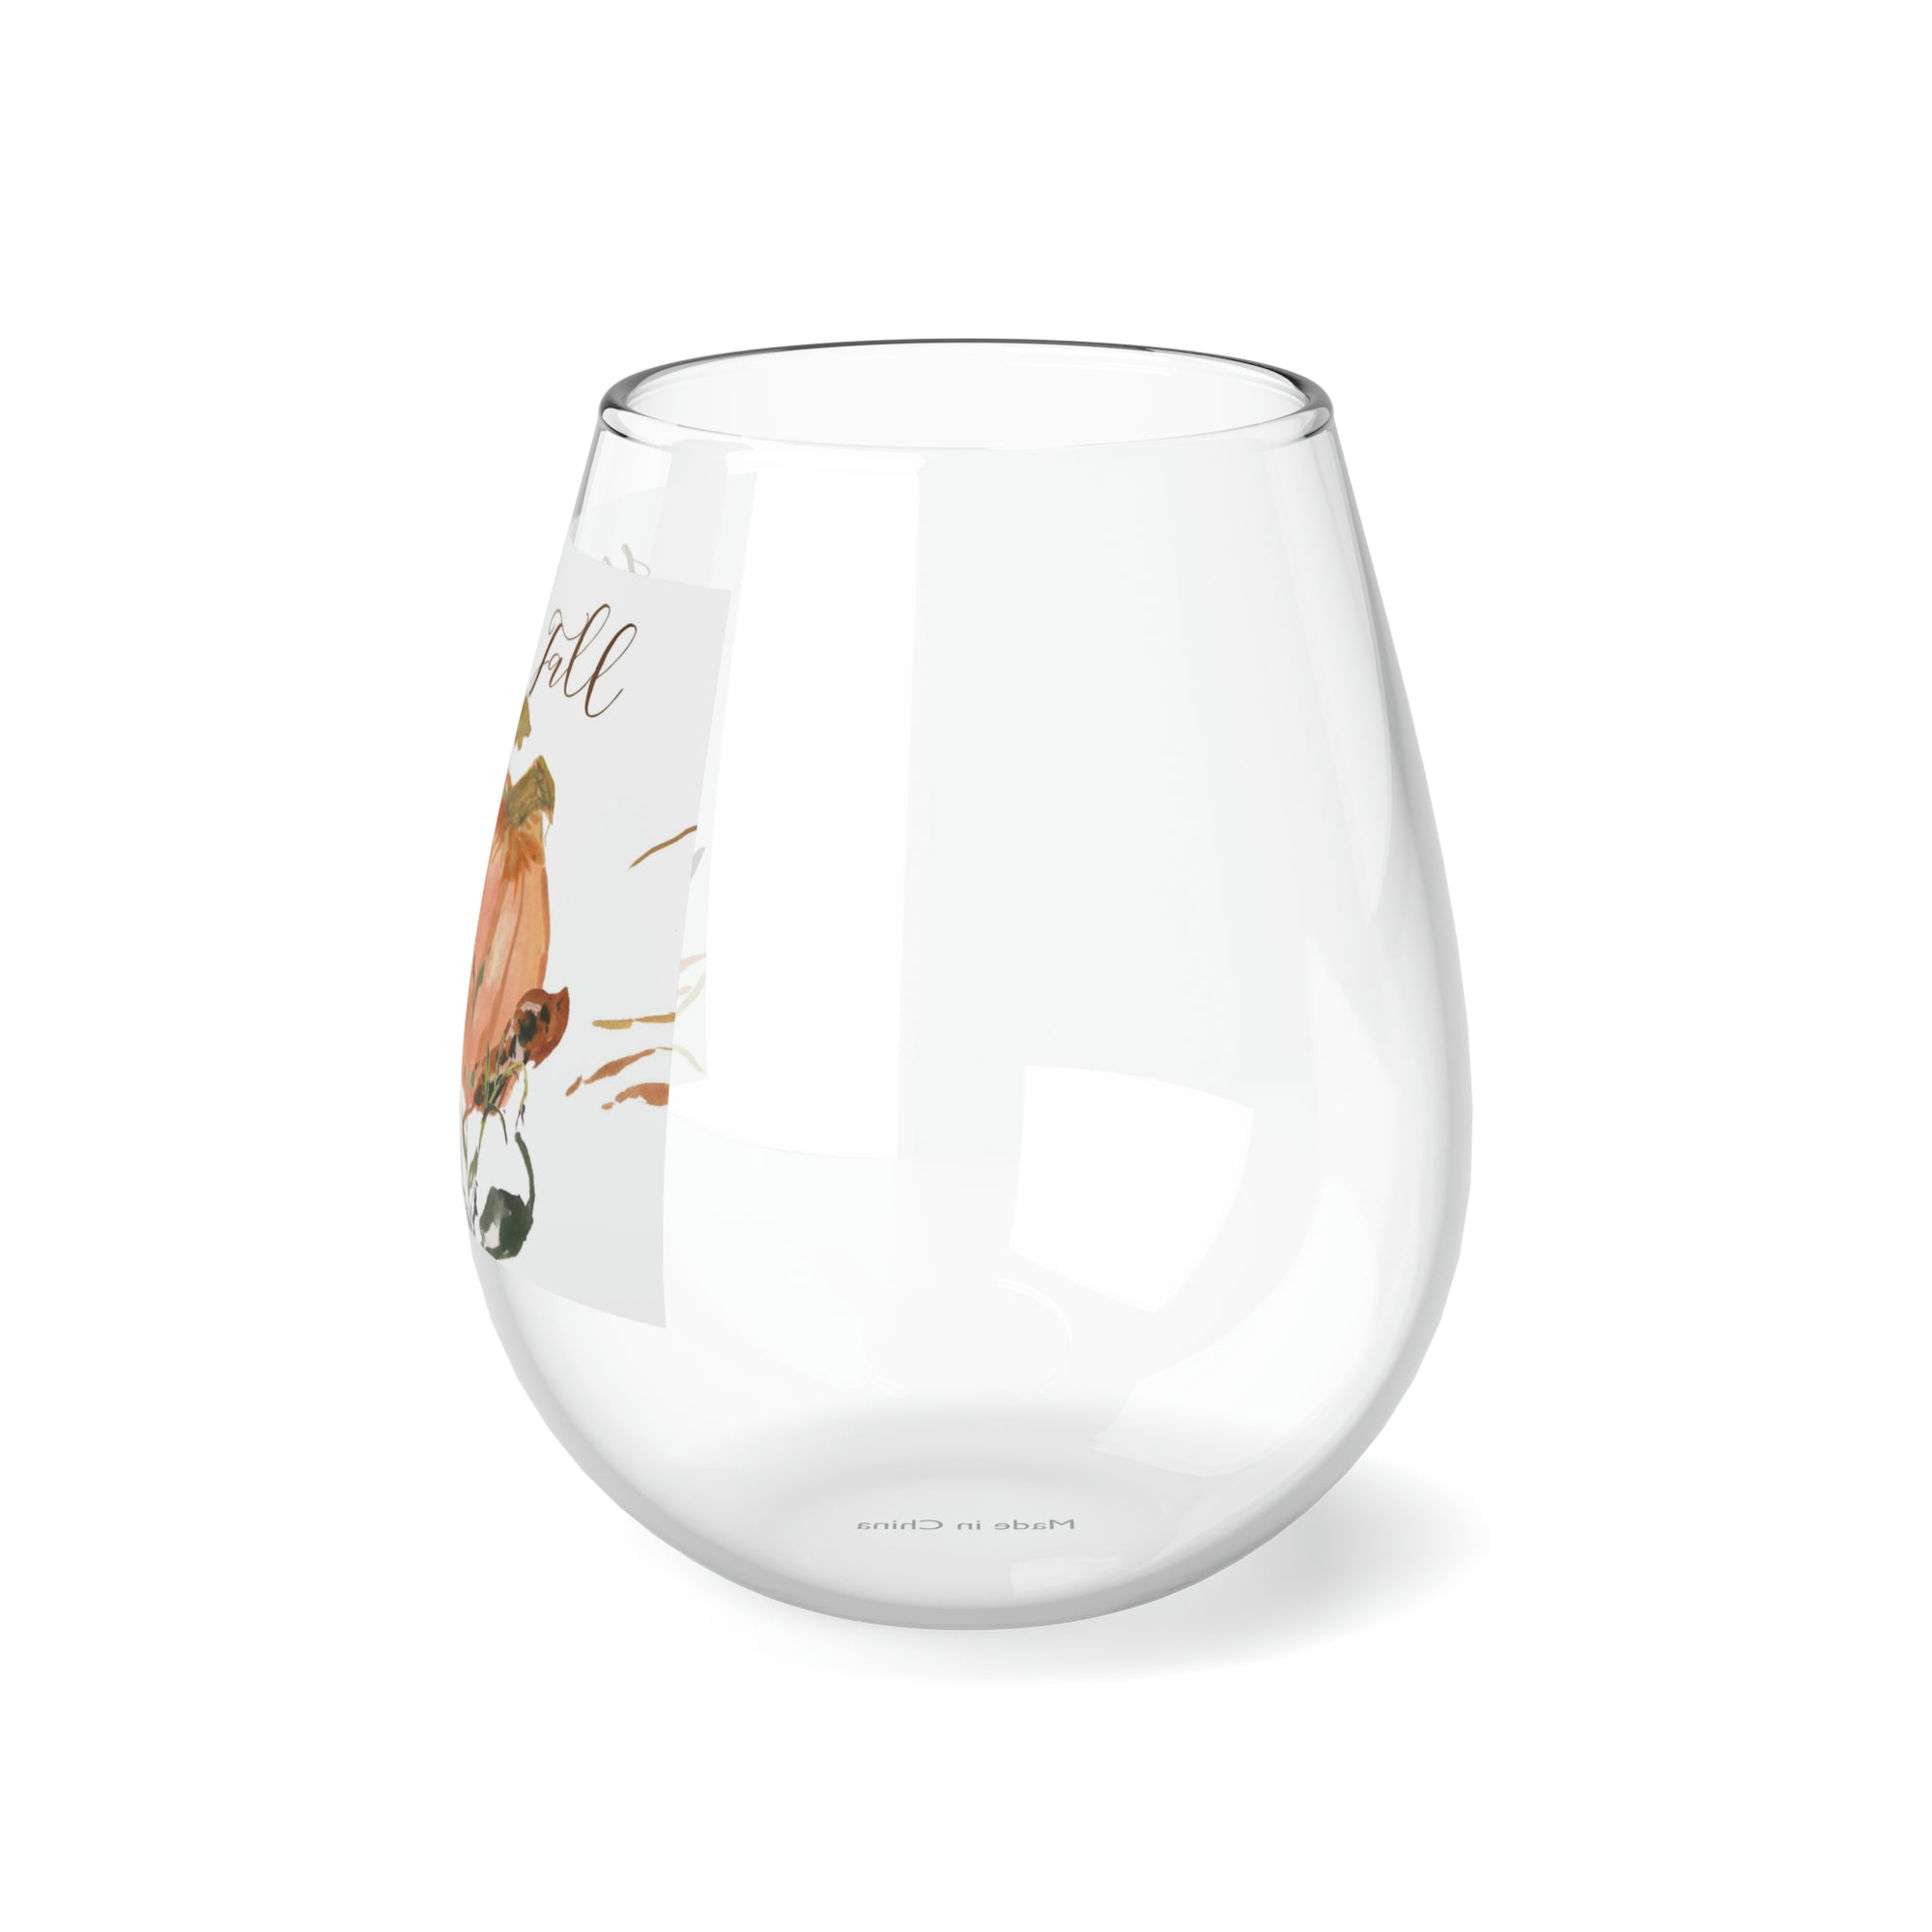 WIne Glass for Fall | Stemless Wine Glass, 11.75oz z|